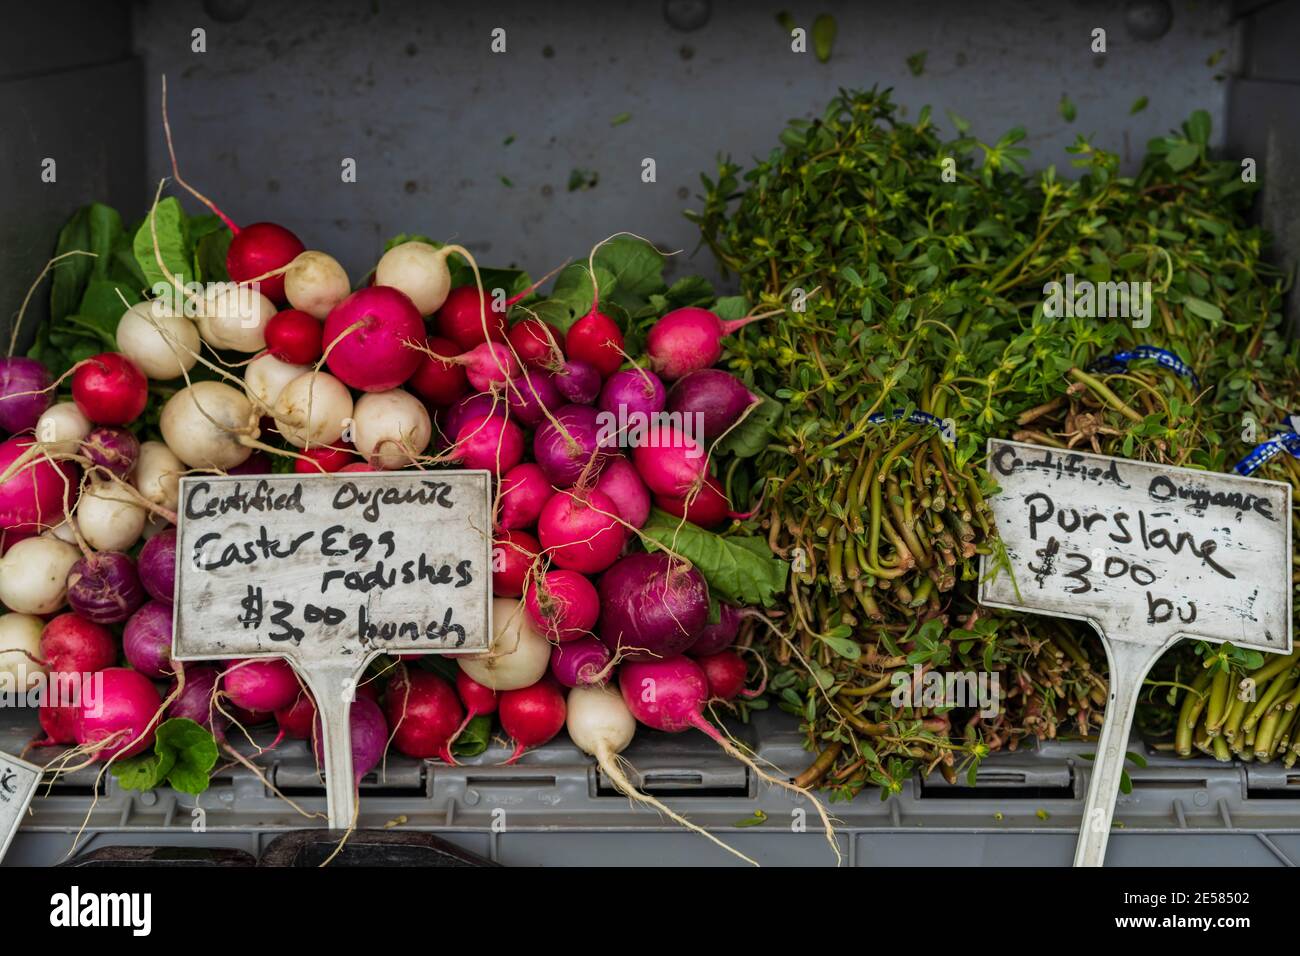 Légumes et herbes biologiques au marché agricole Banque D'Images